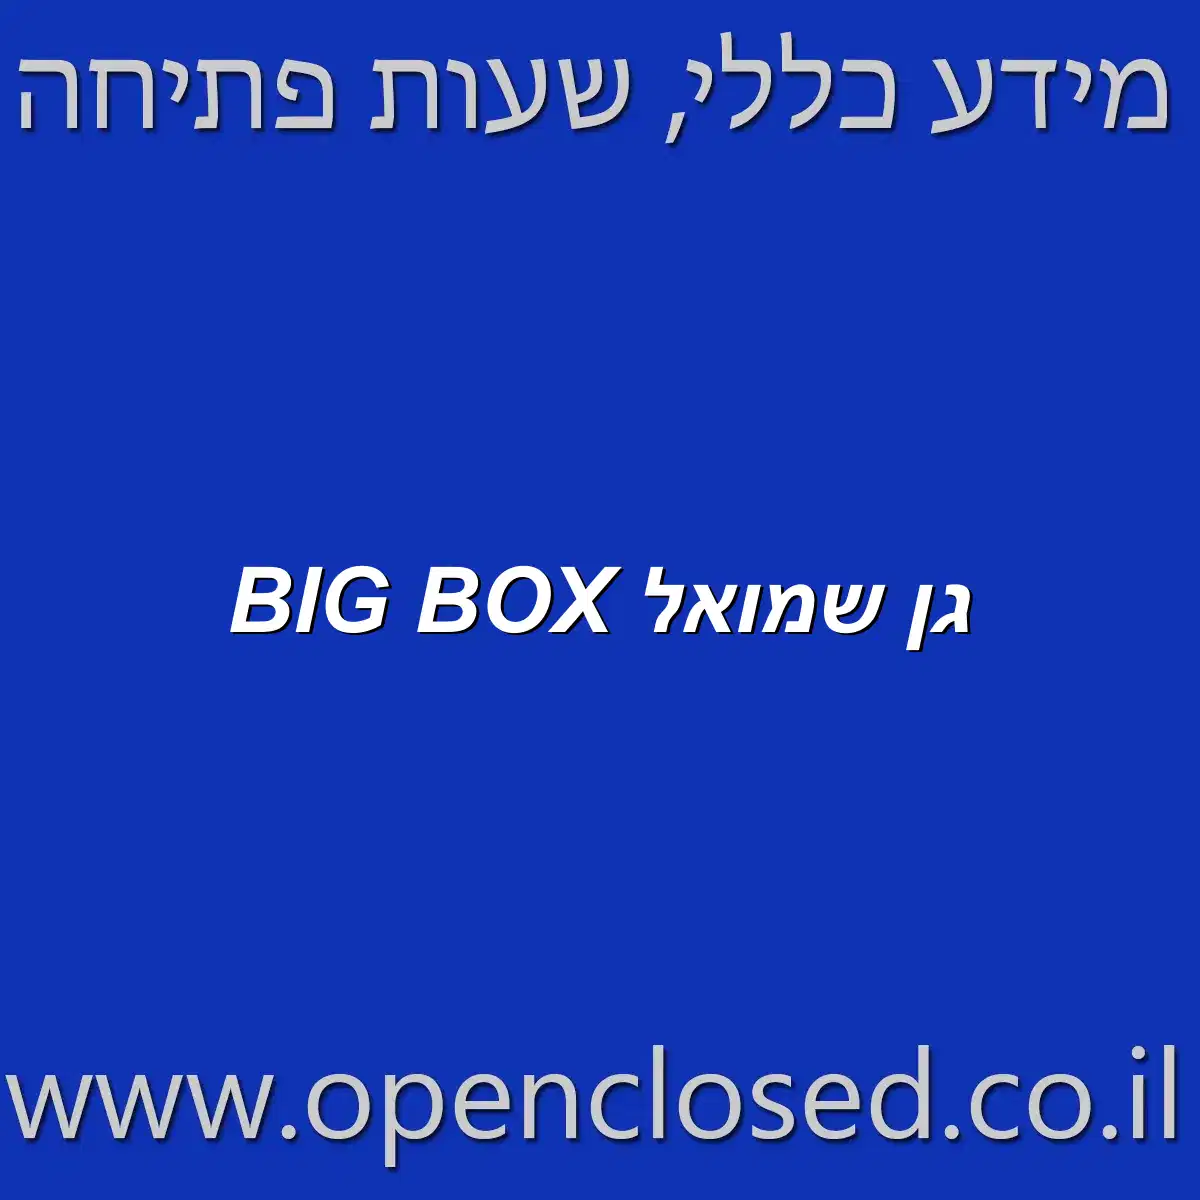 BIG BOX גן שמואל